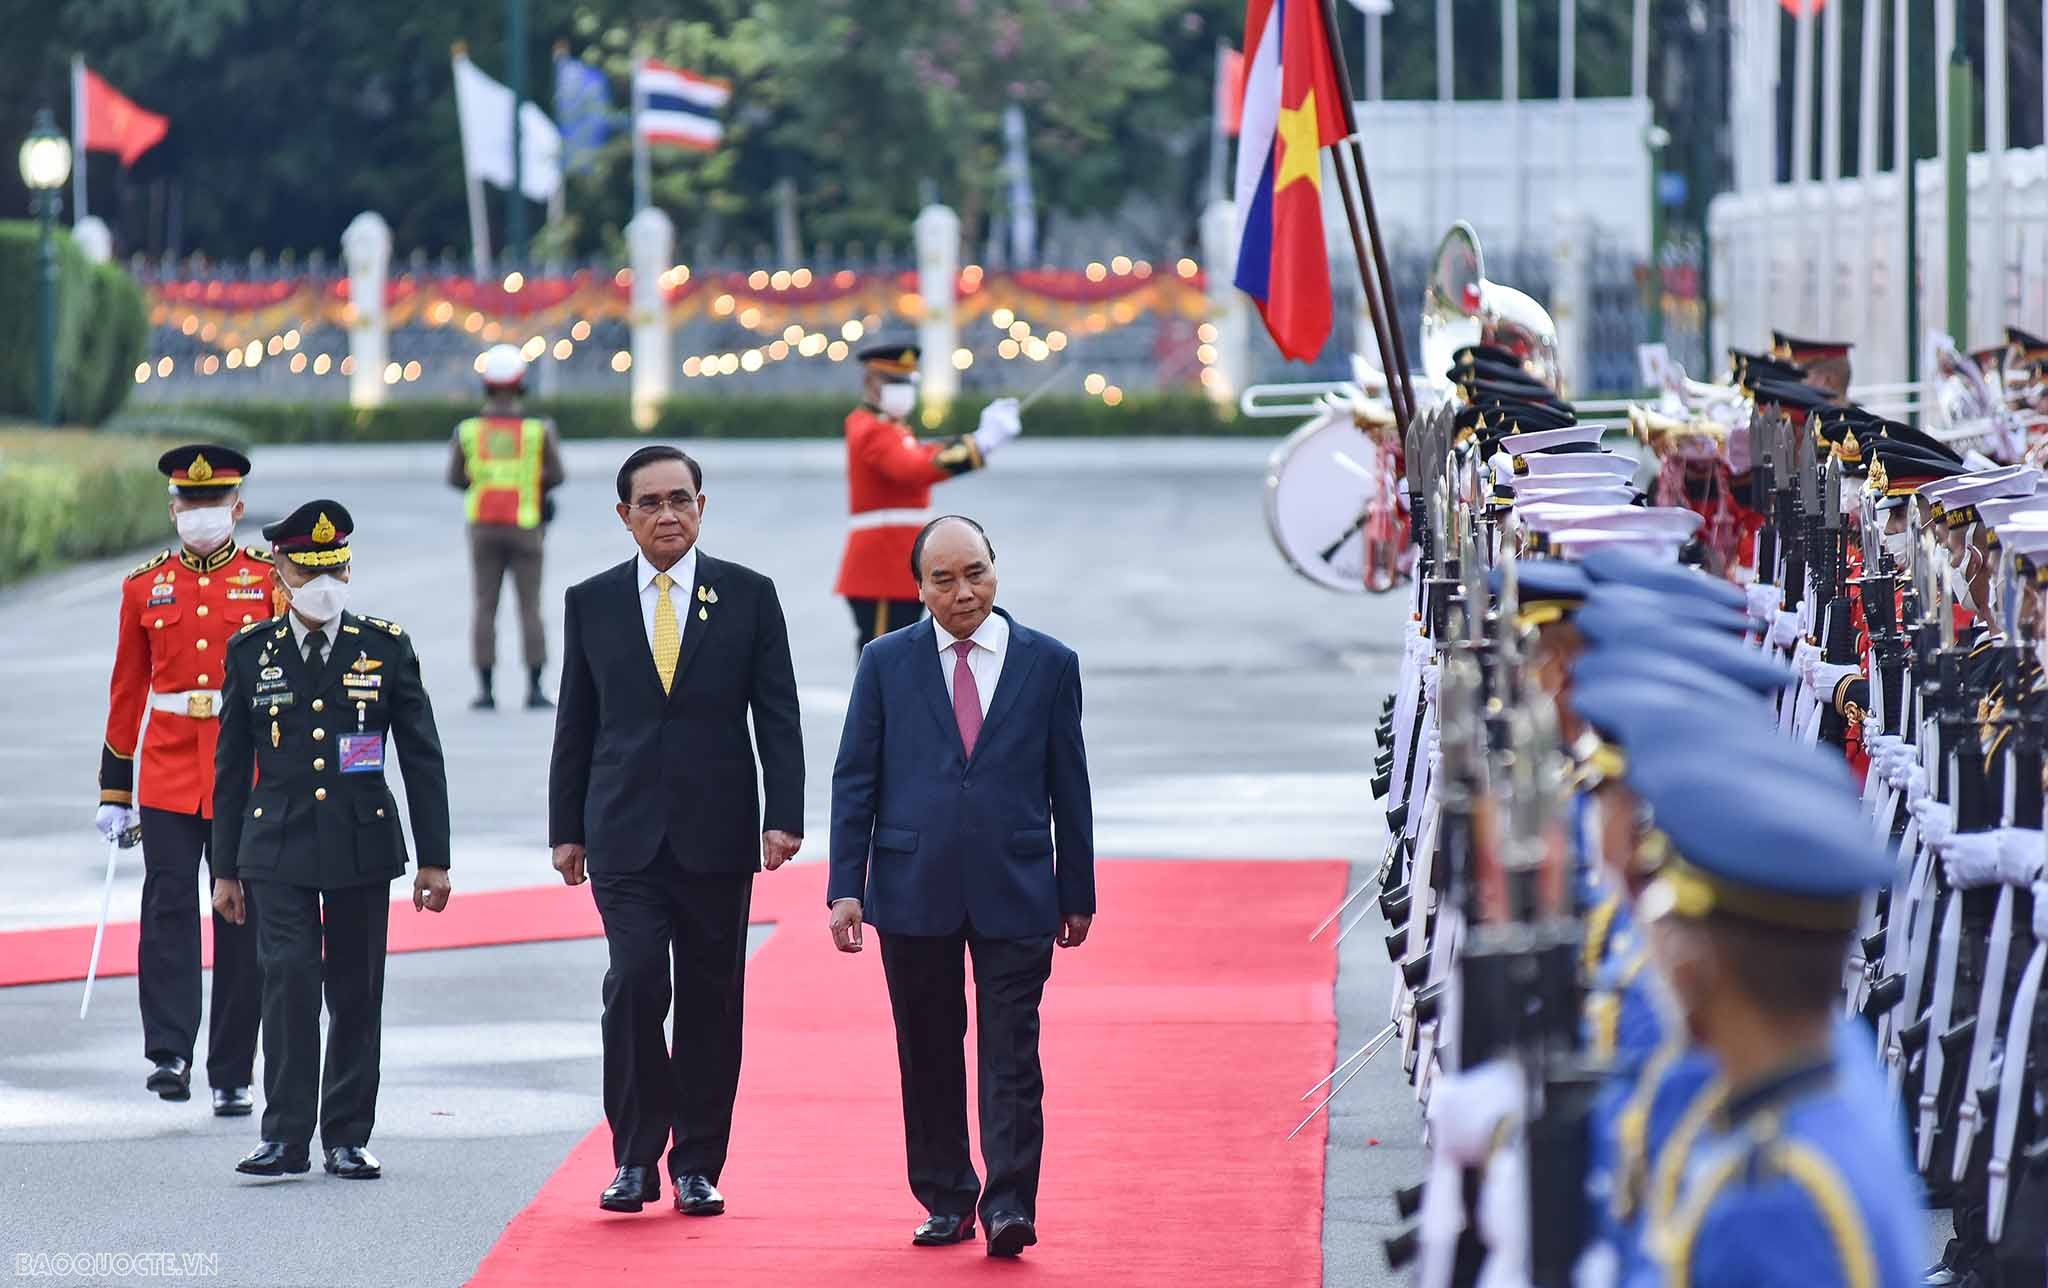 Việt Nam-Thái Lan thông qua chiến lược 'Ba kết nối'